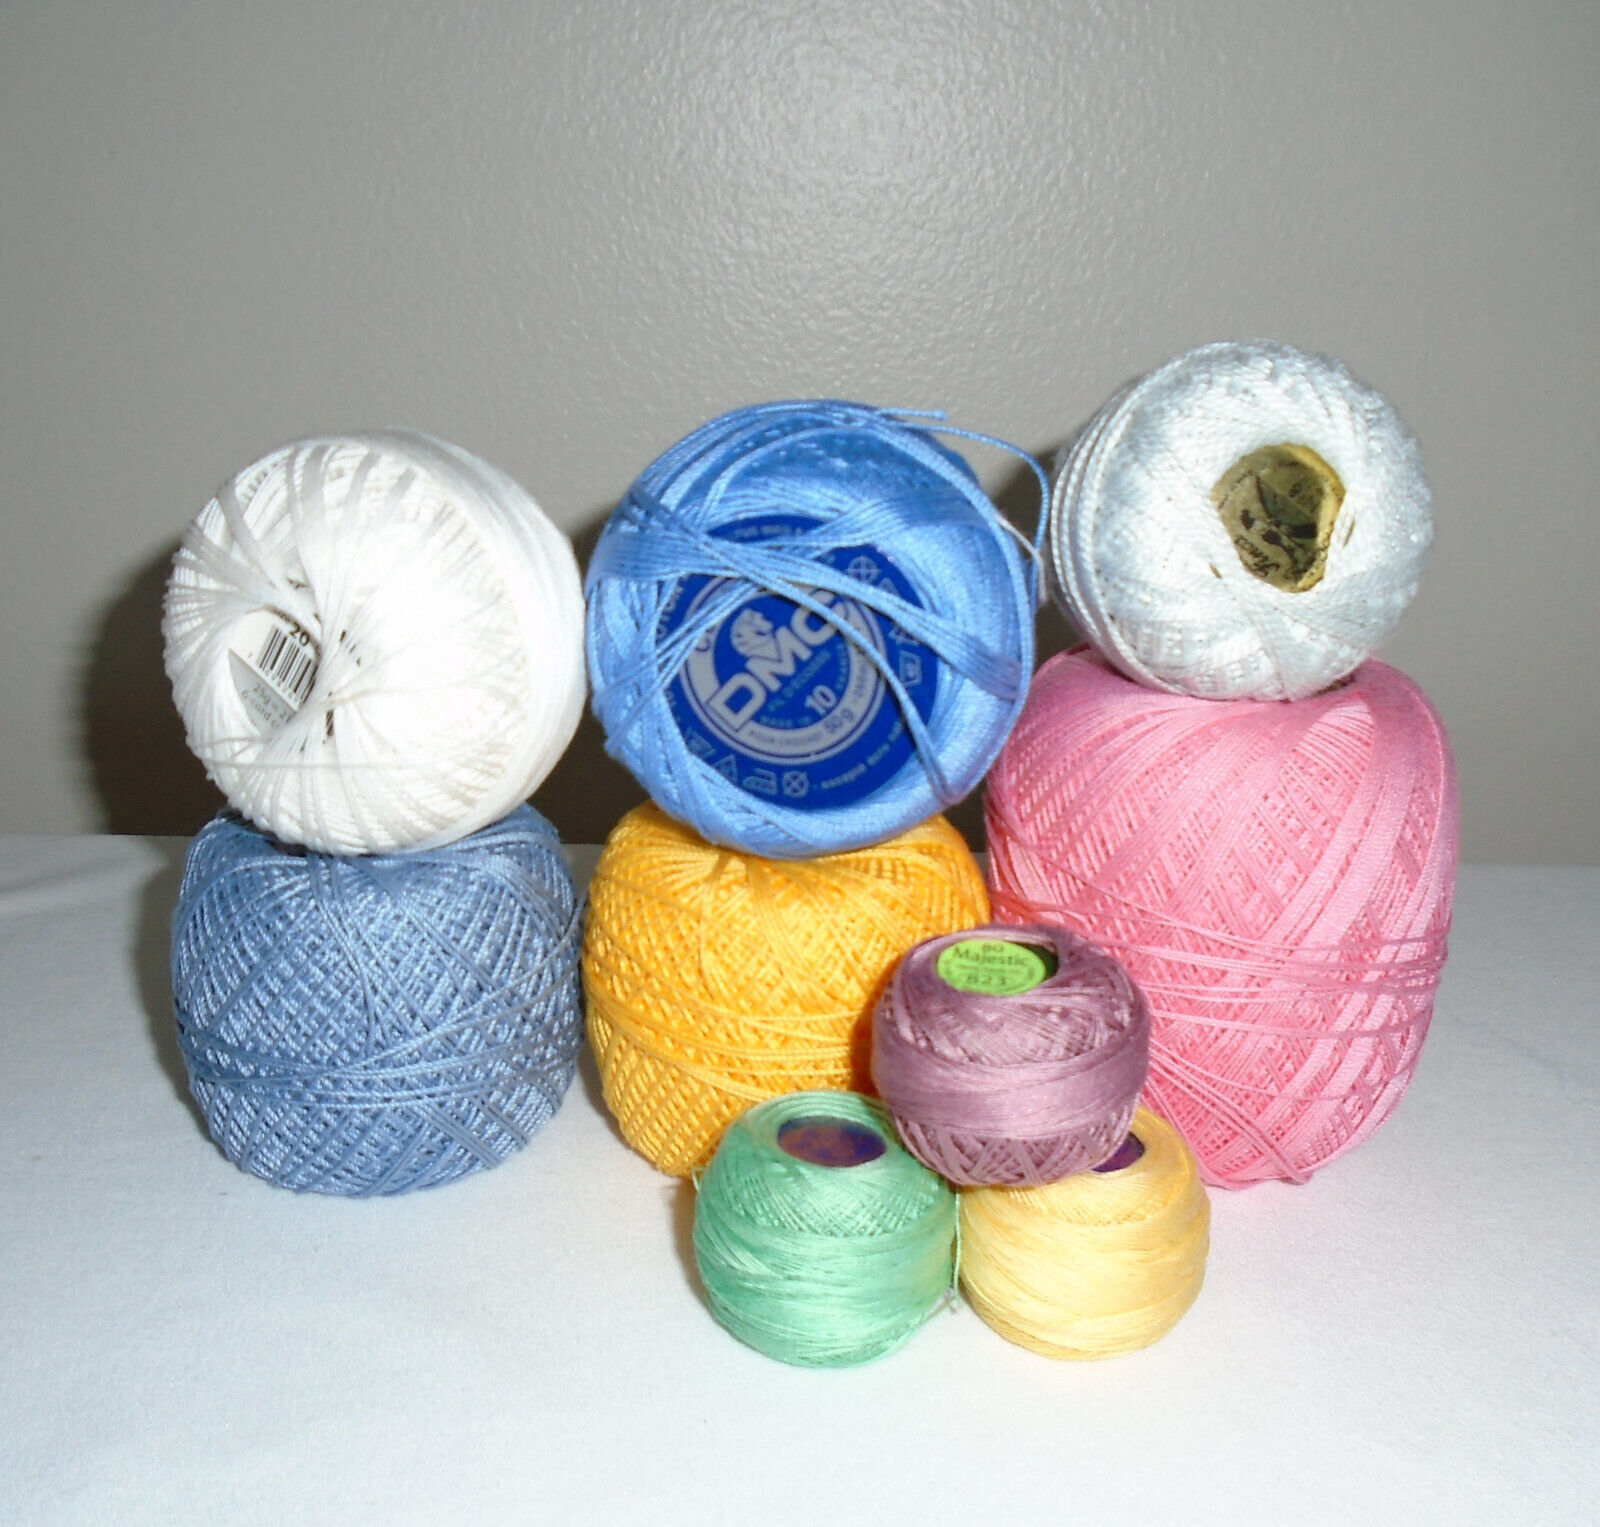 DMC Crochet Thread 100% Cotton Mixed Lot Sizes 10, 8, 80, 20 Lizbeth Manuela  - $19.80